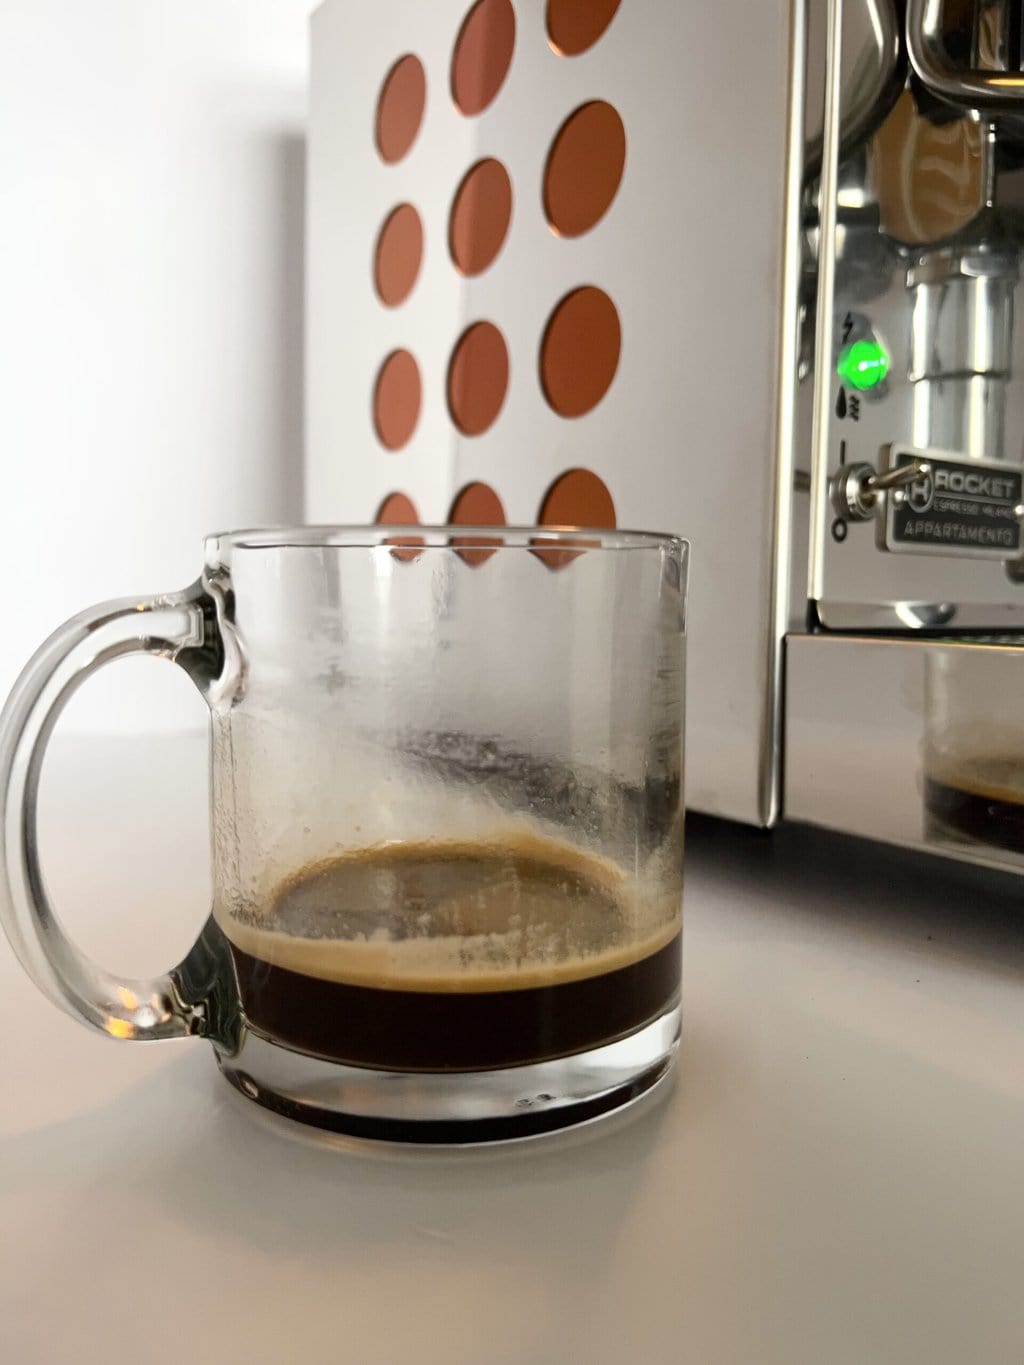 杯咖啡后台Rocket EspressoApptaramento咖啡机